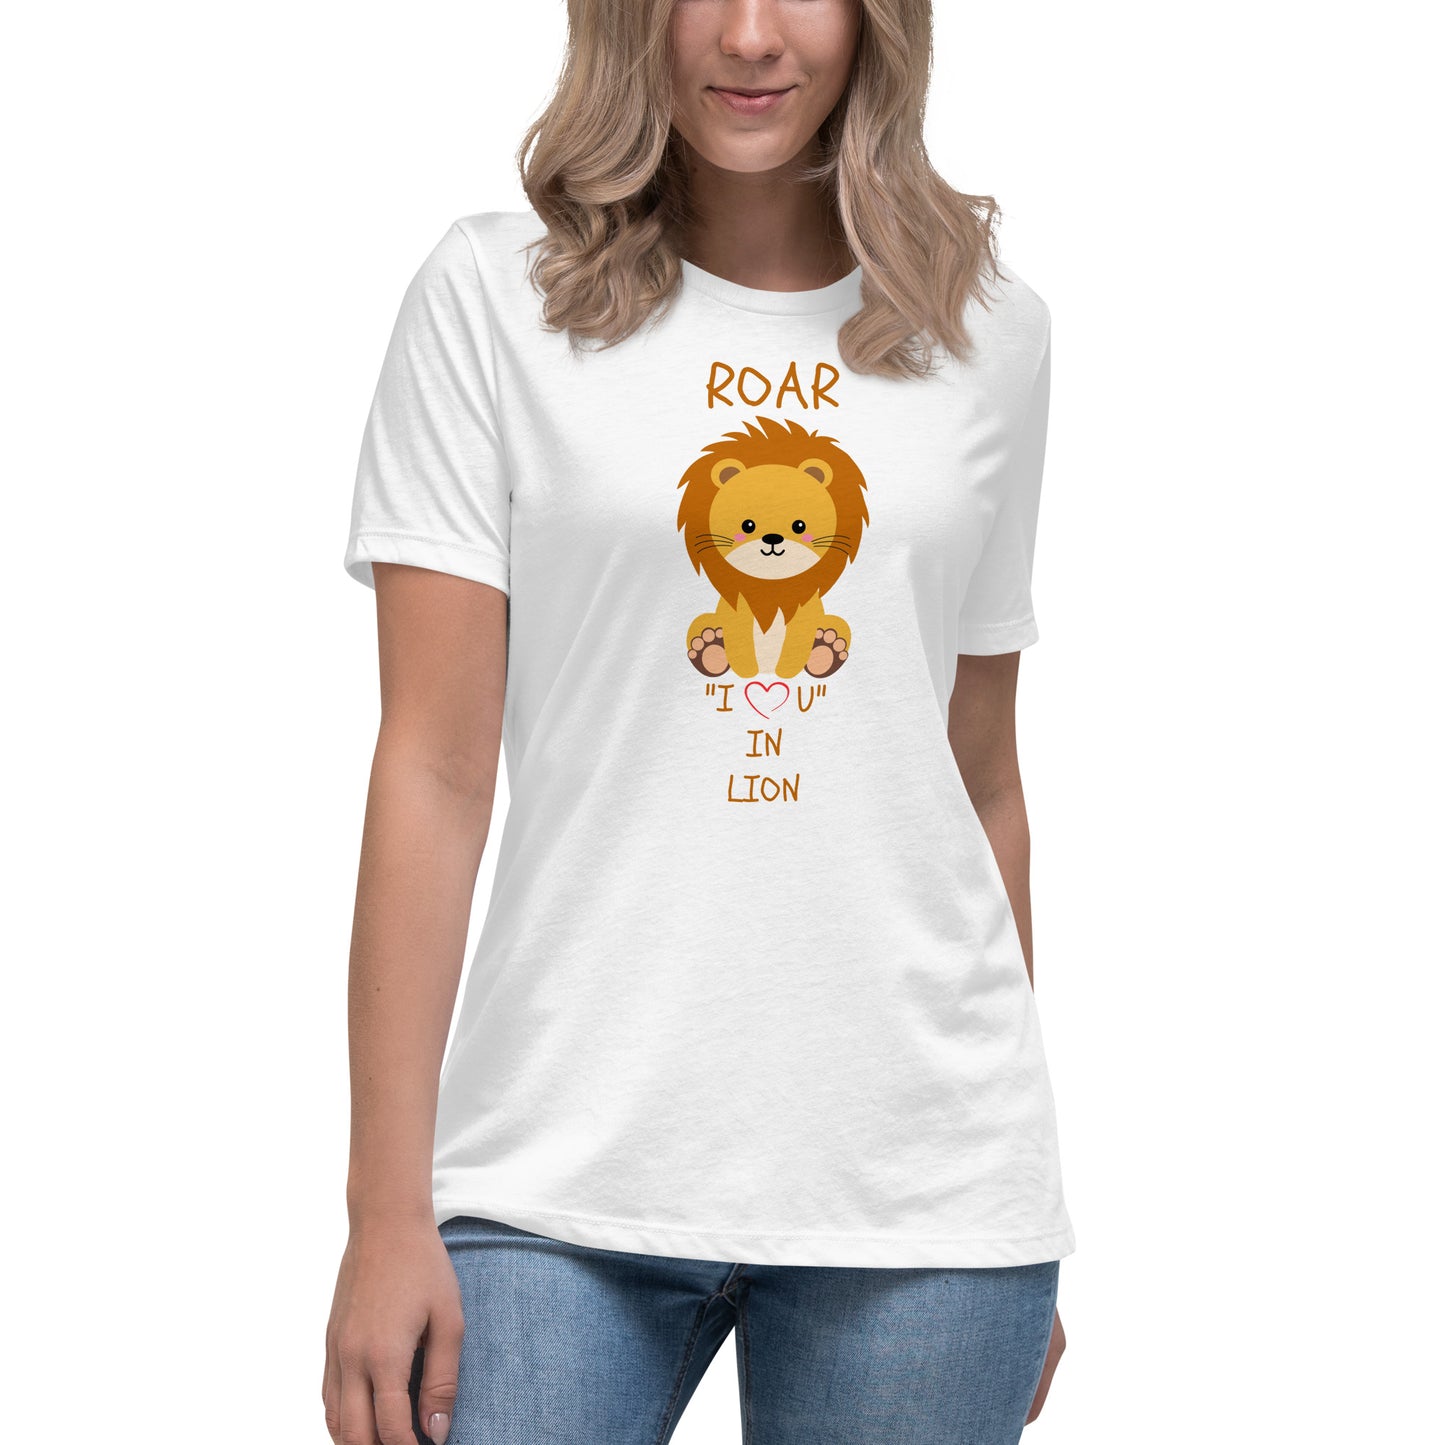 ROAR "I LOVE U" IN LION Women's Relaxed T-Shirt